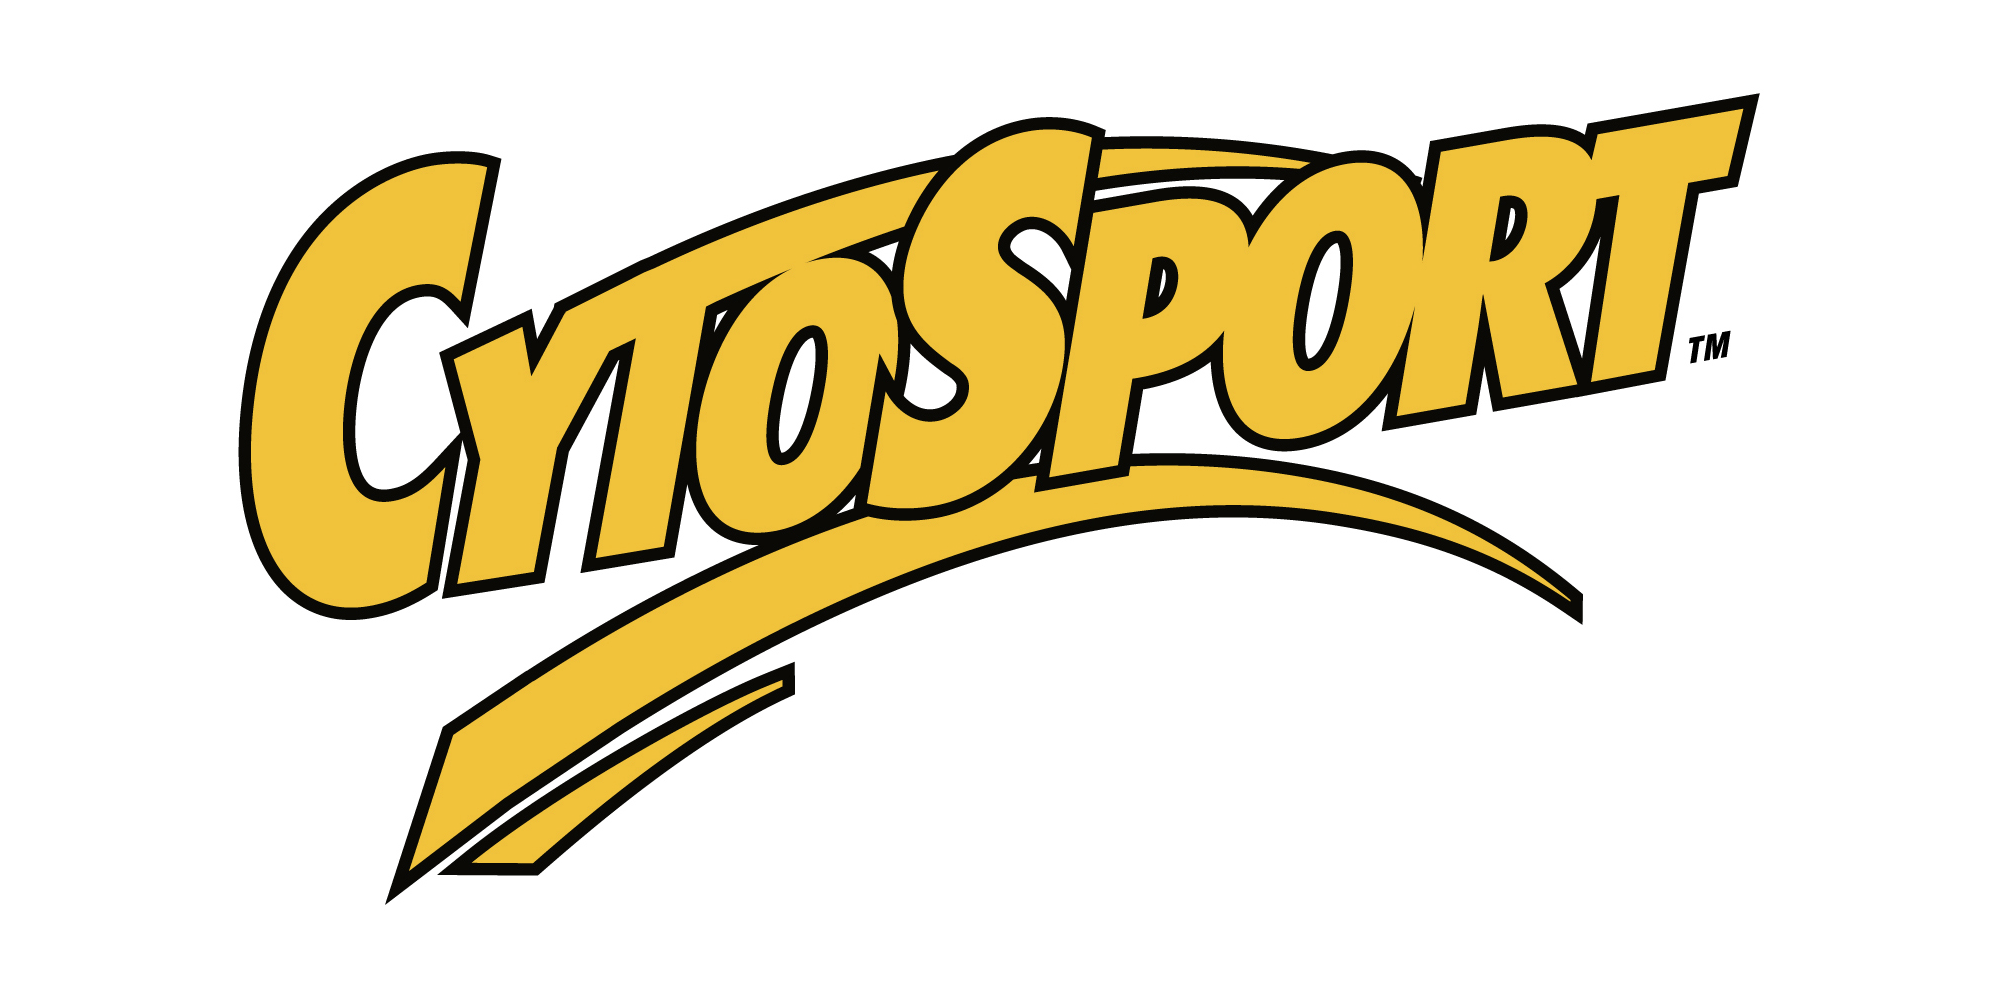 Cytosport